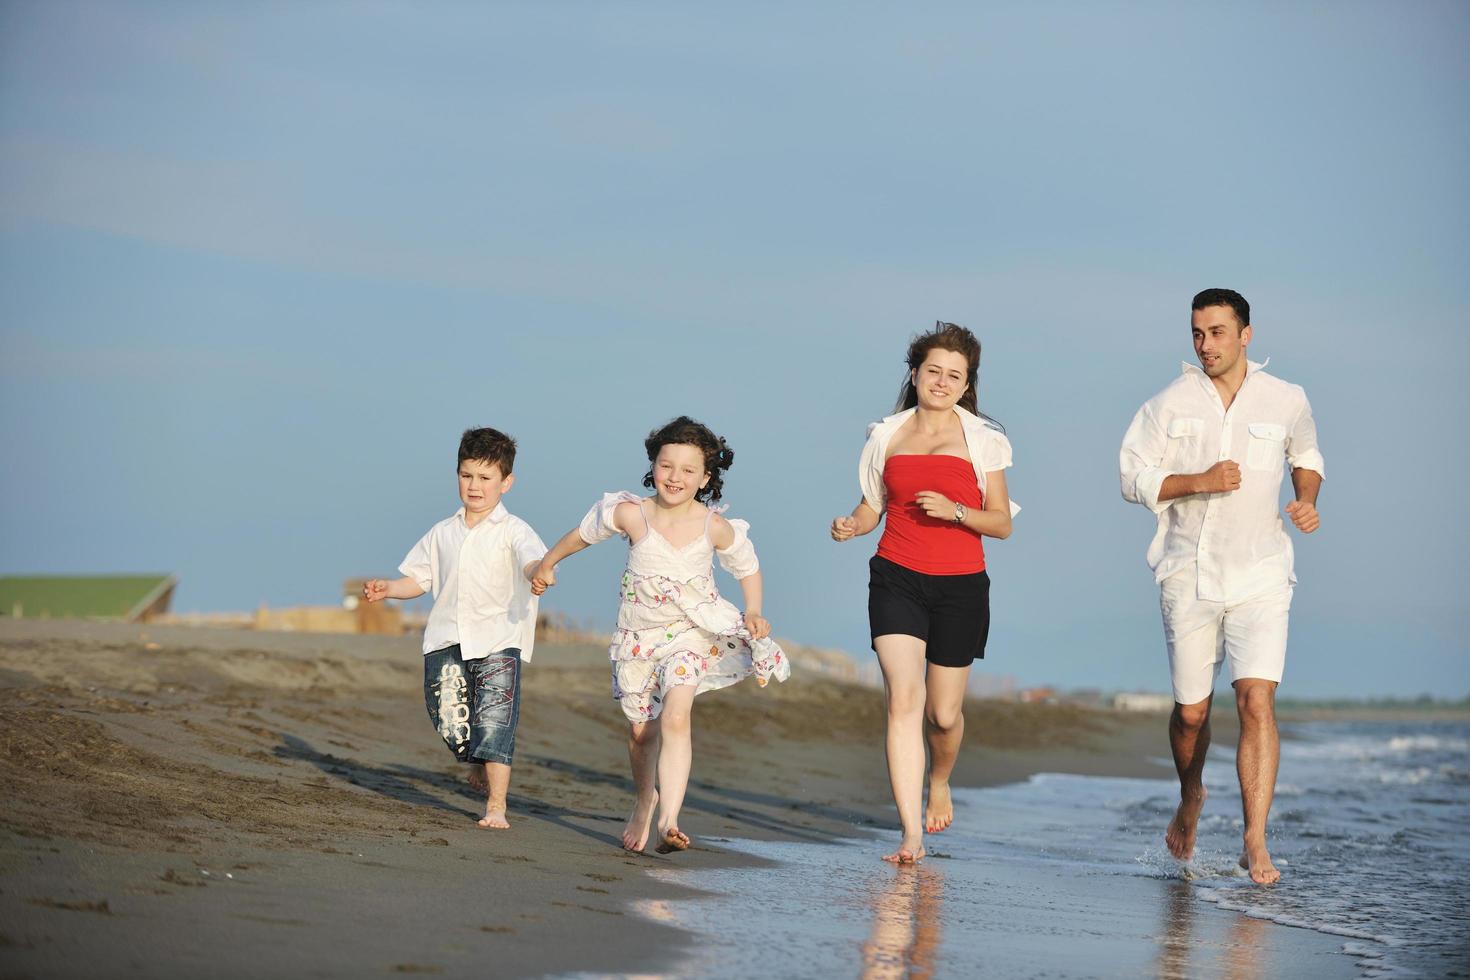 Lycklig ung familj ha roligt på strand foto